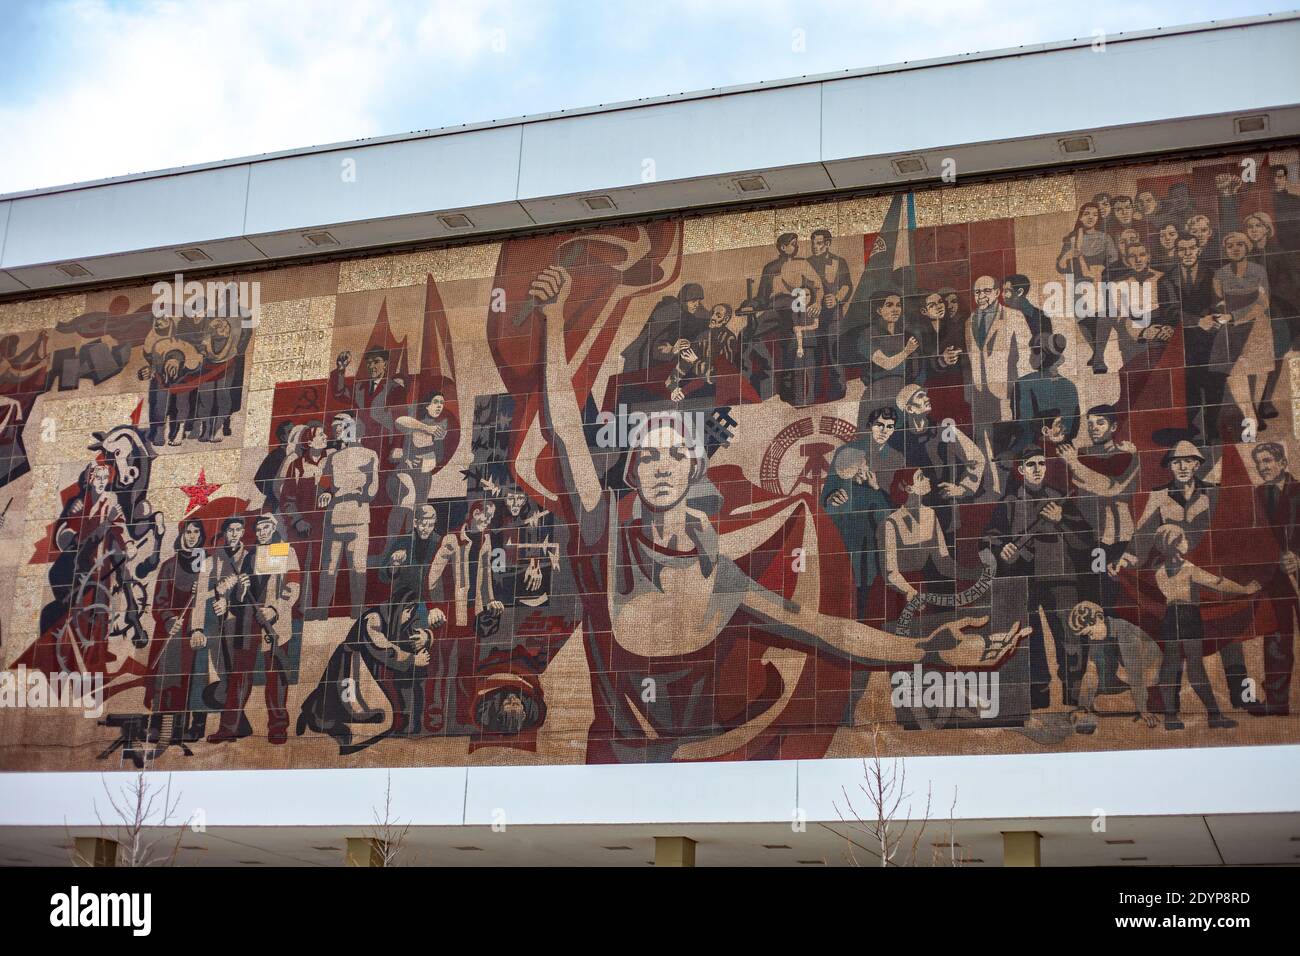 Murale di epoca comunista sul muro del Kulturpalast a Dresda, Germania. Fotografato in una giornata intensa. Foto Stock